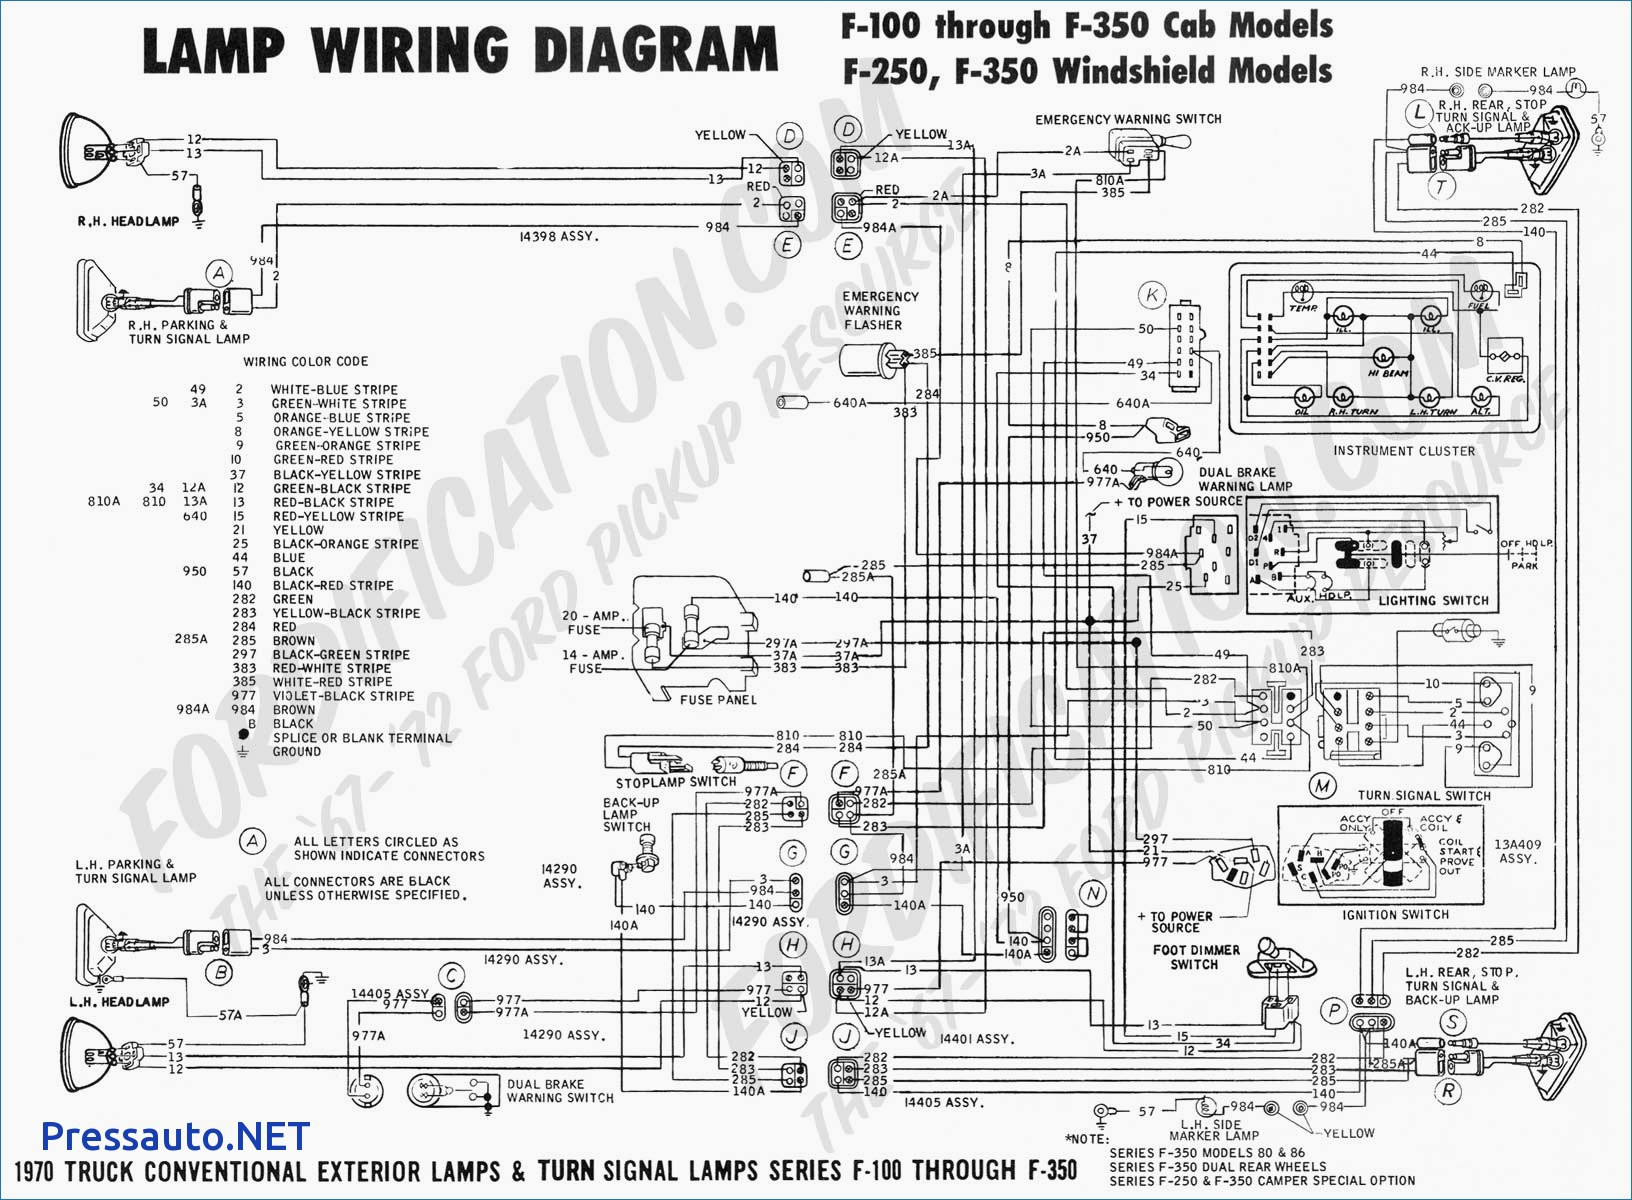 Mass Air Flow Sensor Wiring Diagram Mass Air Flow Sensor Wiring Diagram Beautiful Nissan Maf Fault P0100